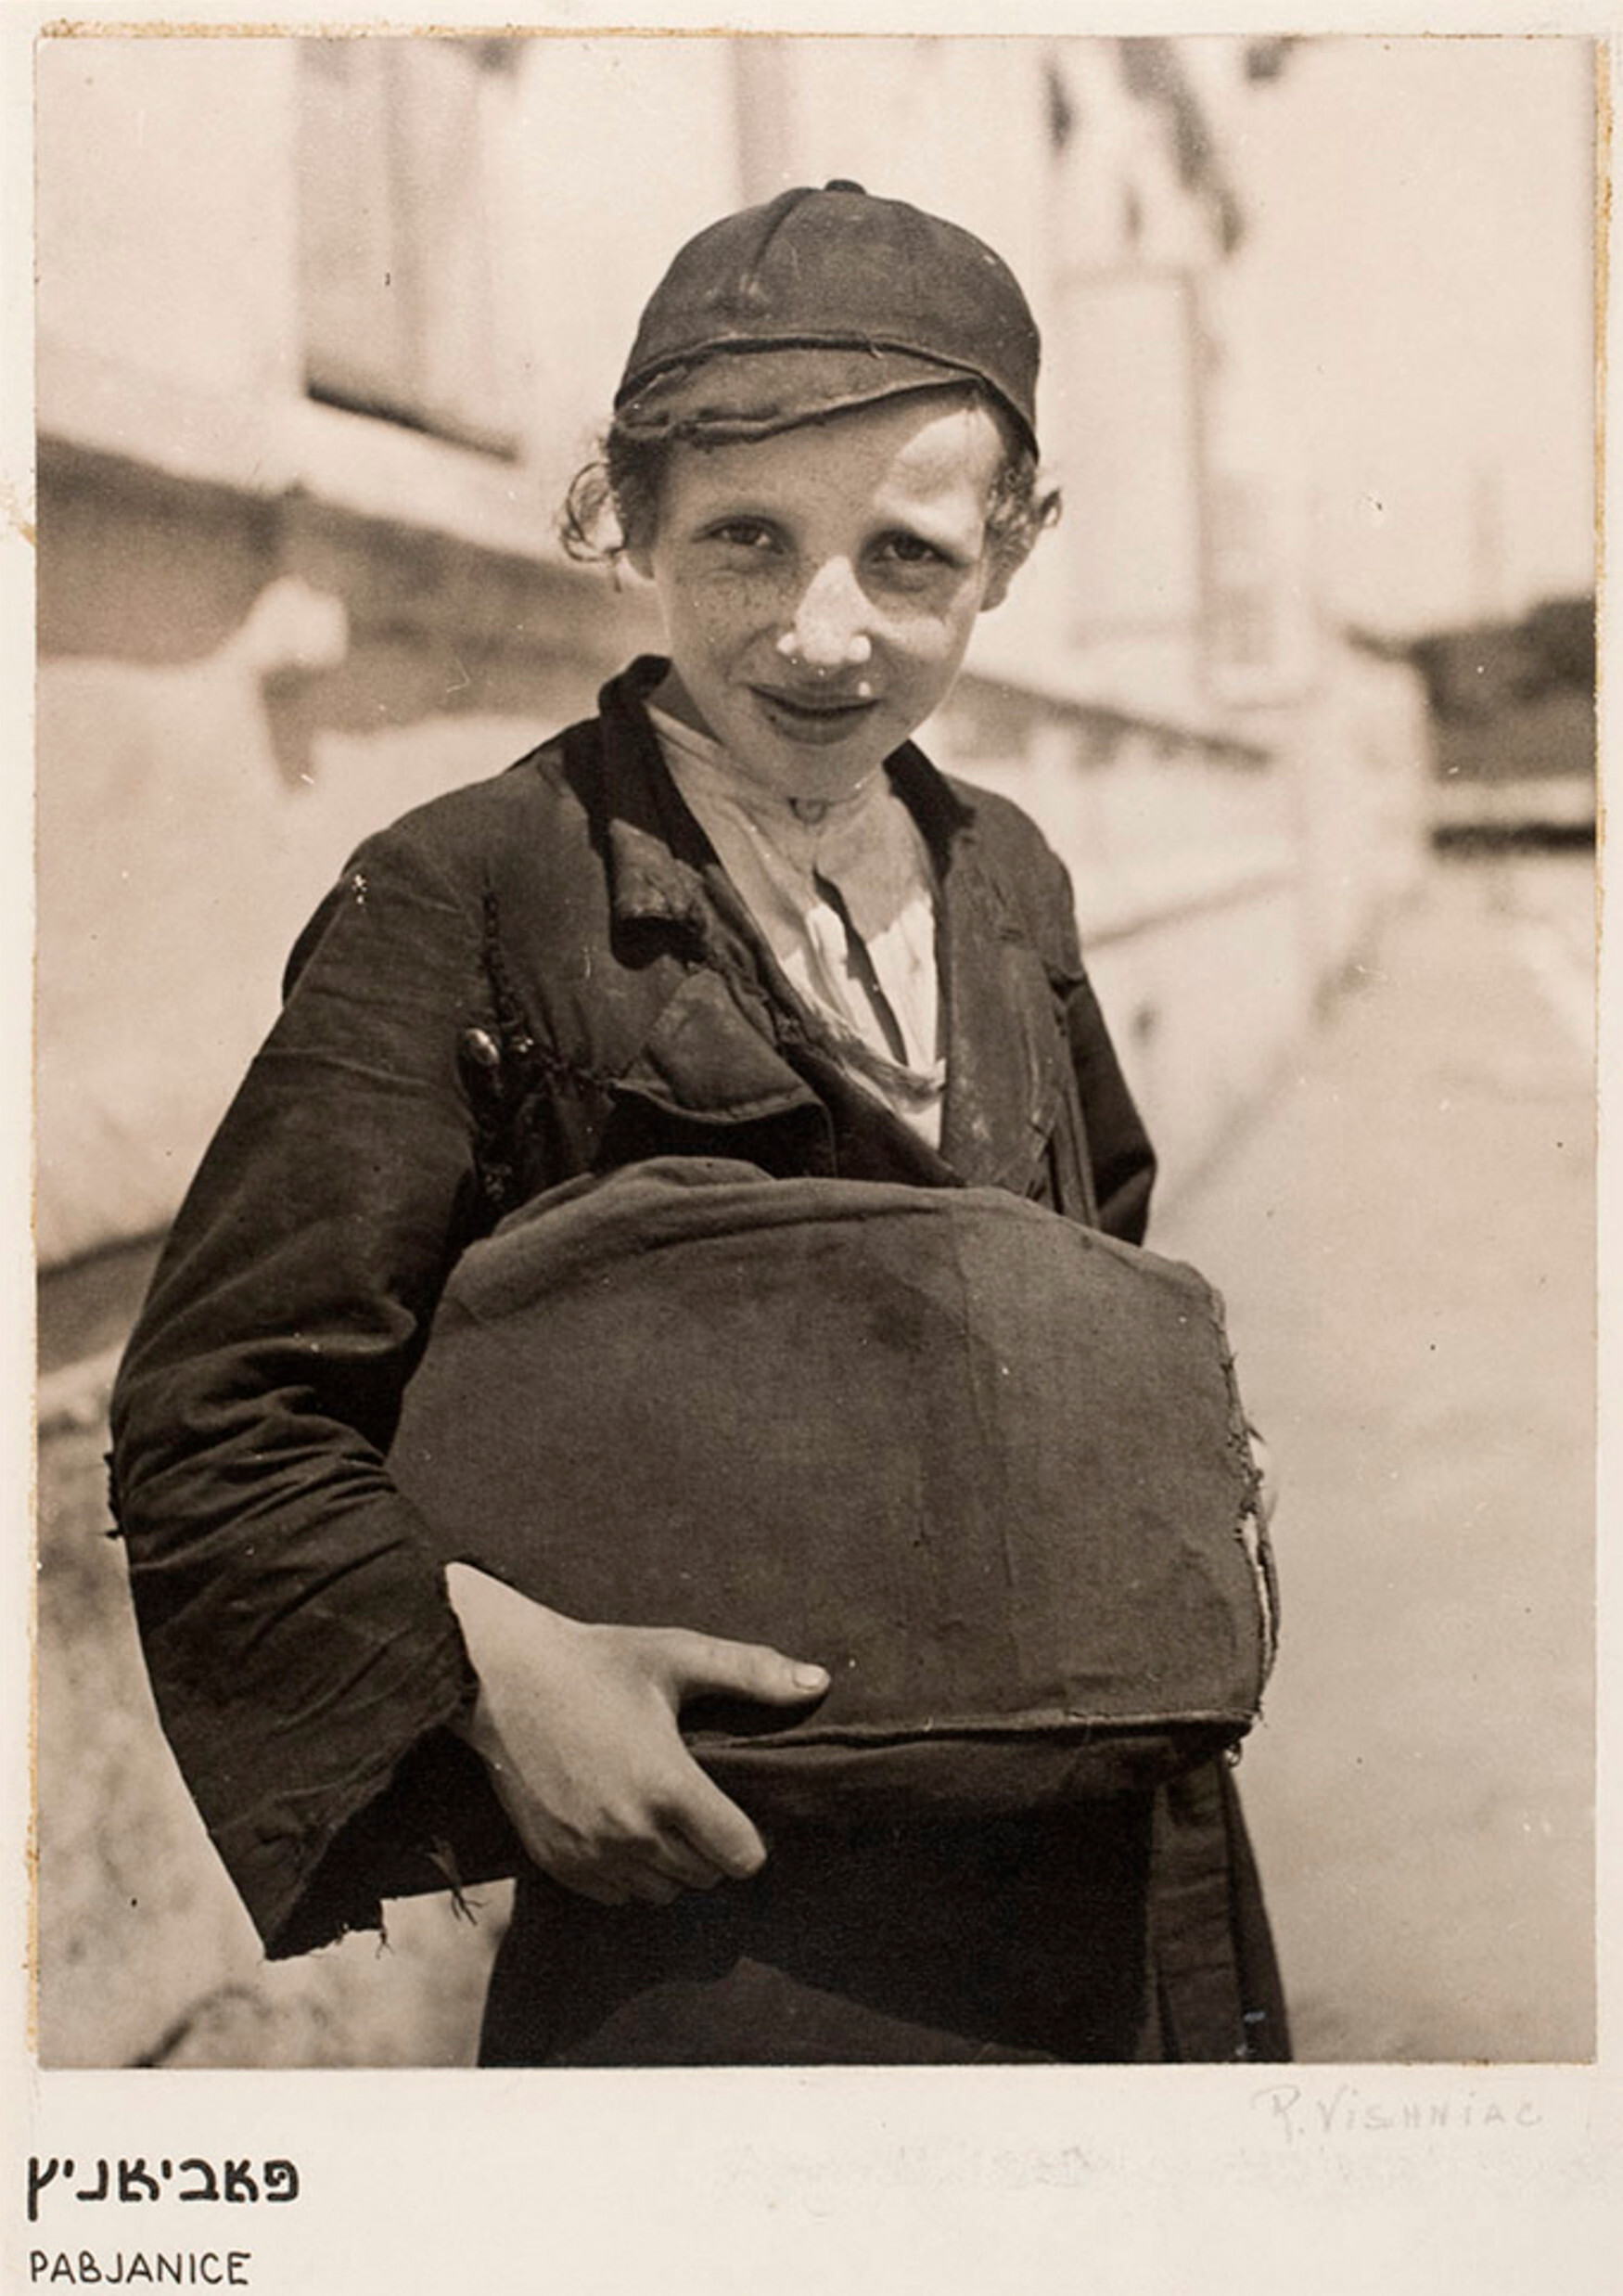 Мальчик держит свою сумку, Пабьянике., ок. 1935-38 гг. Фотограф Роман Вишняк